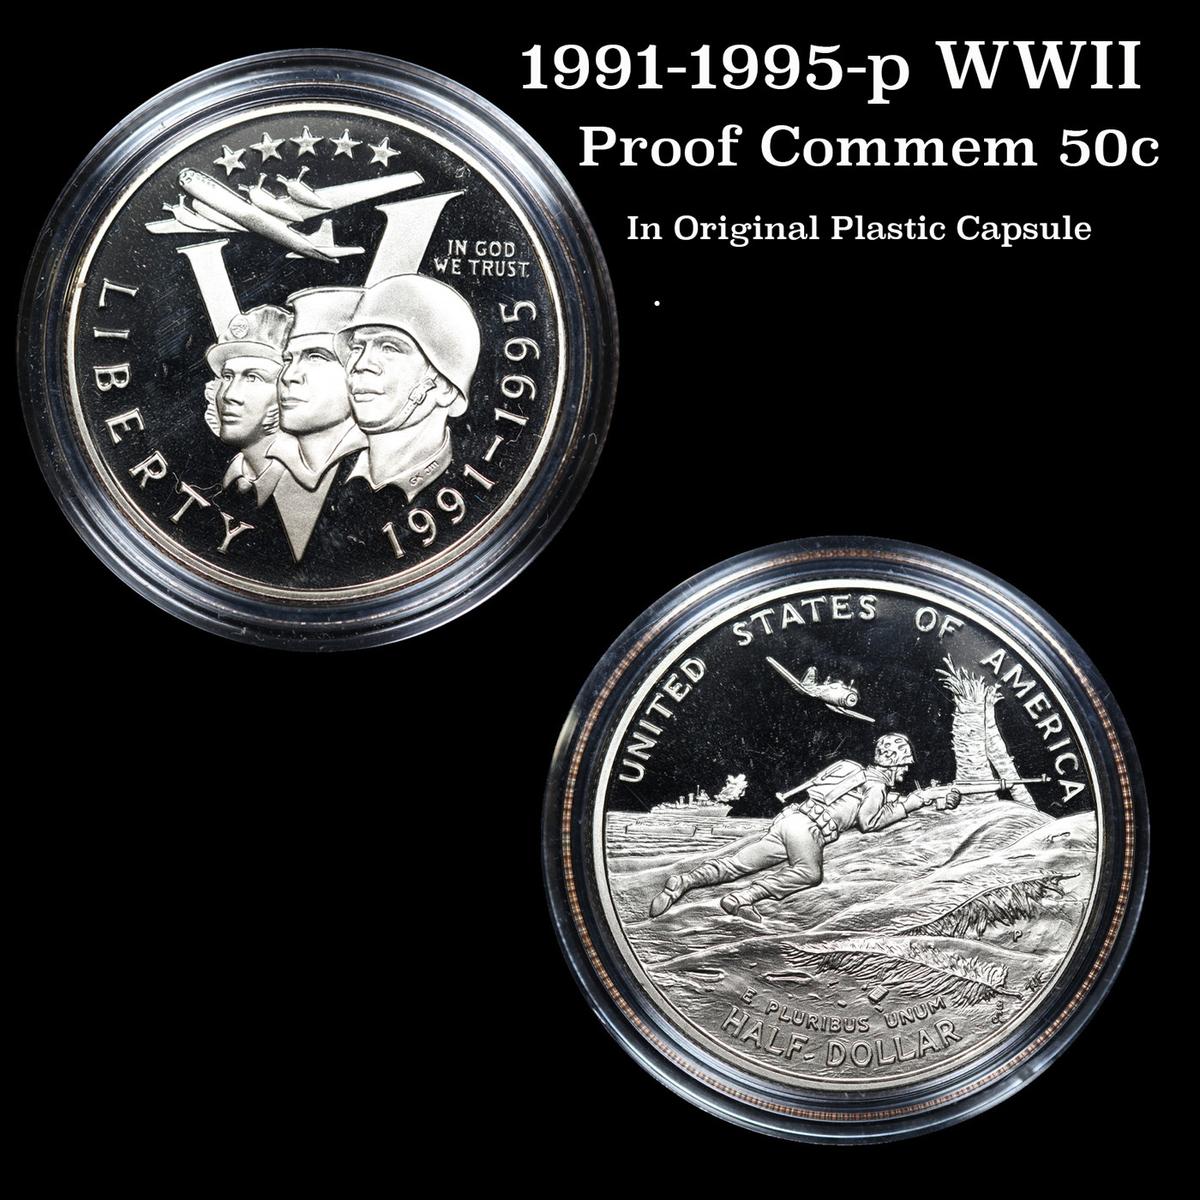 1991-1995-p WWII In Original Plastic Capsule Modern Commem Half Dollar 50c